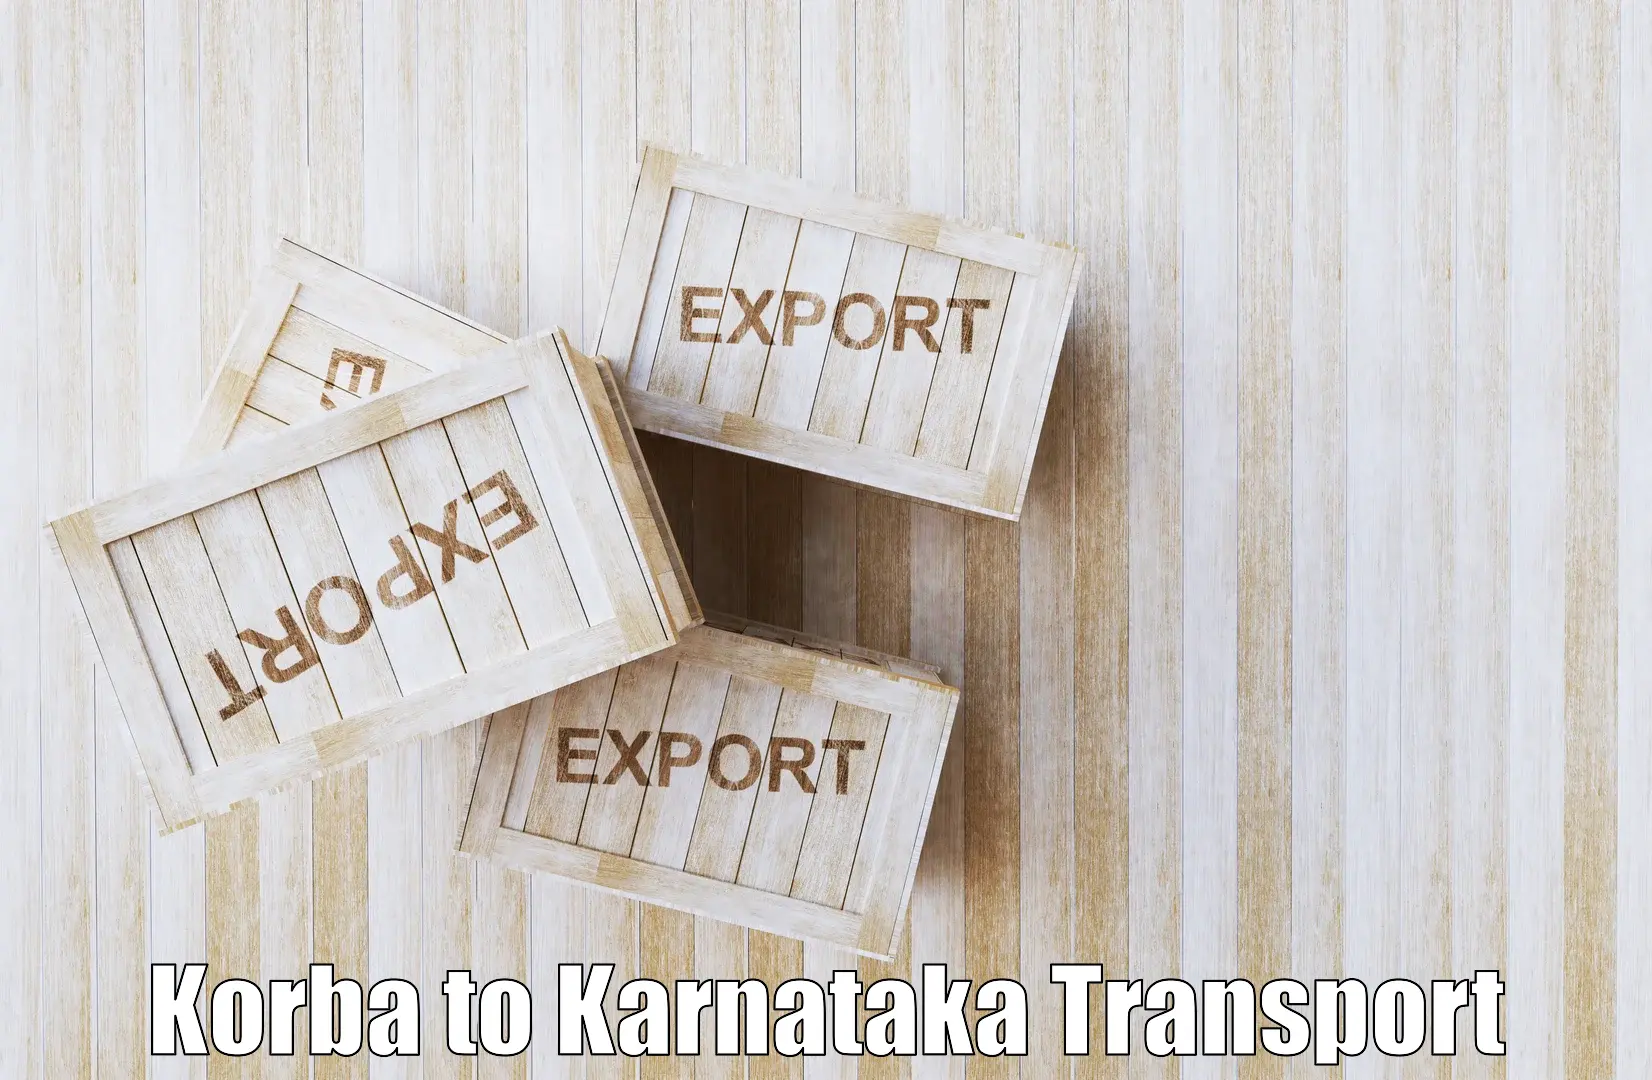 Transportation solution services in Korba to Kolar